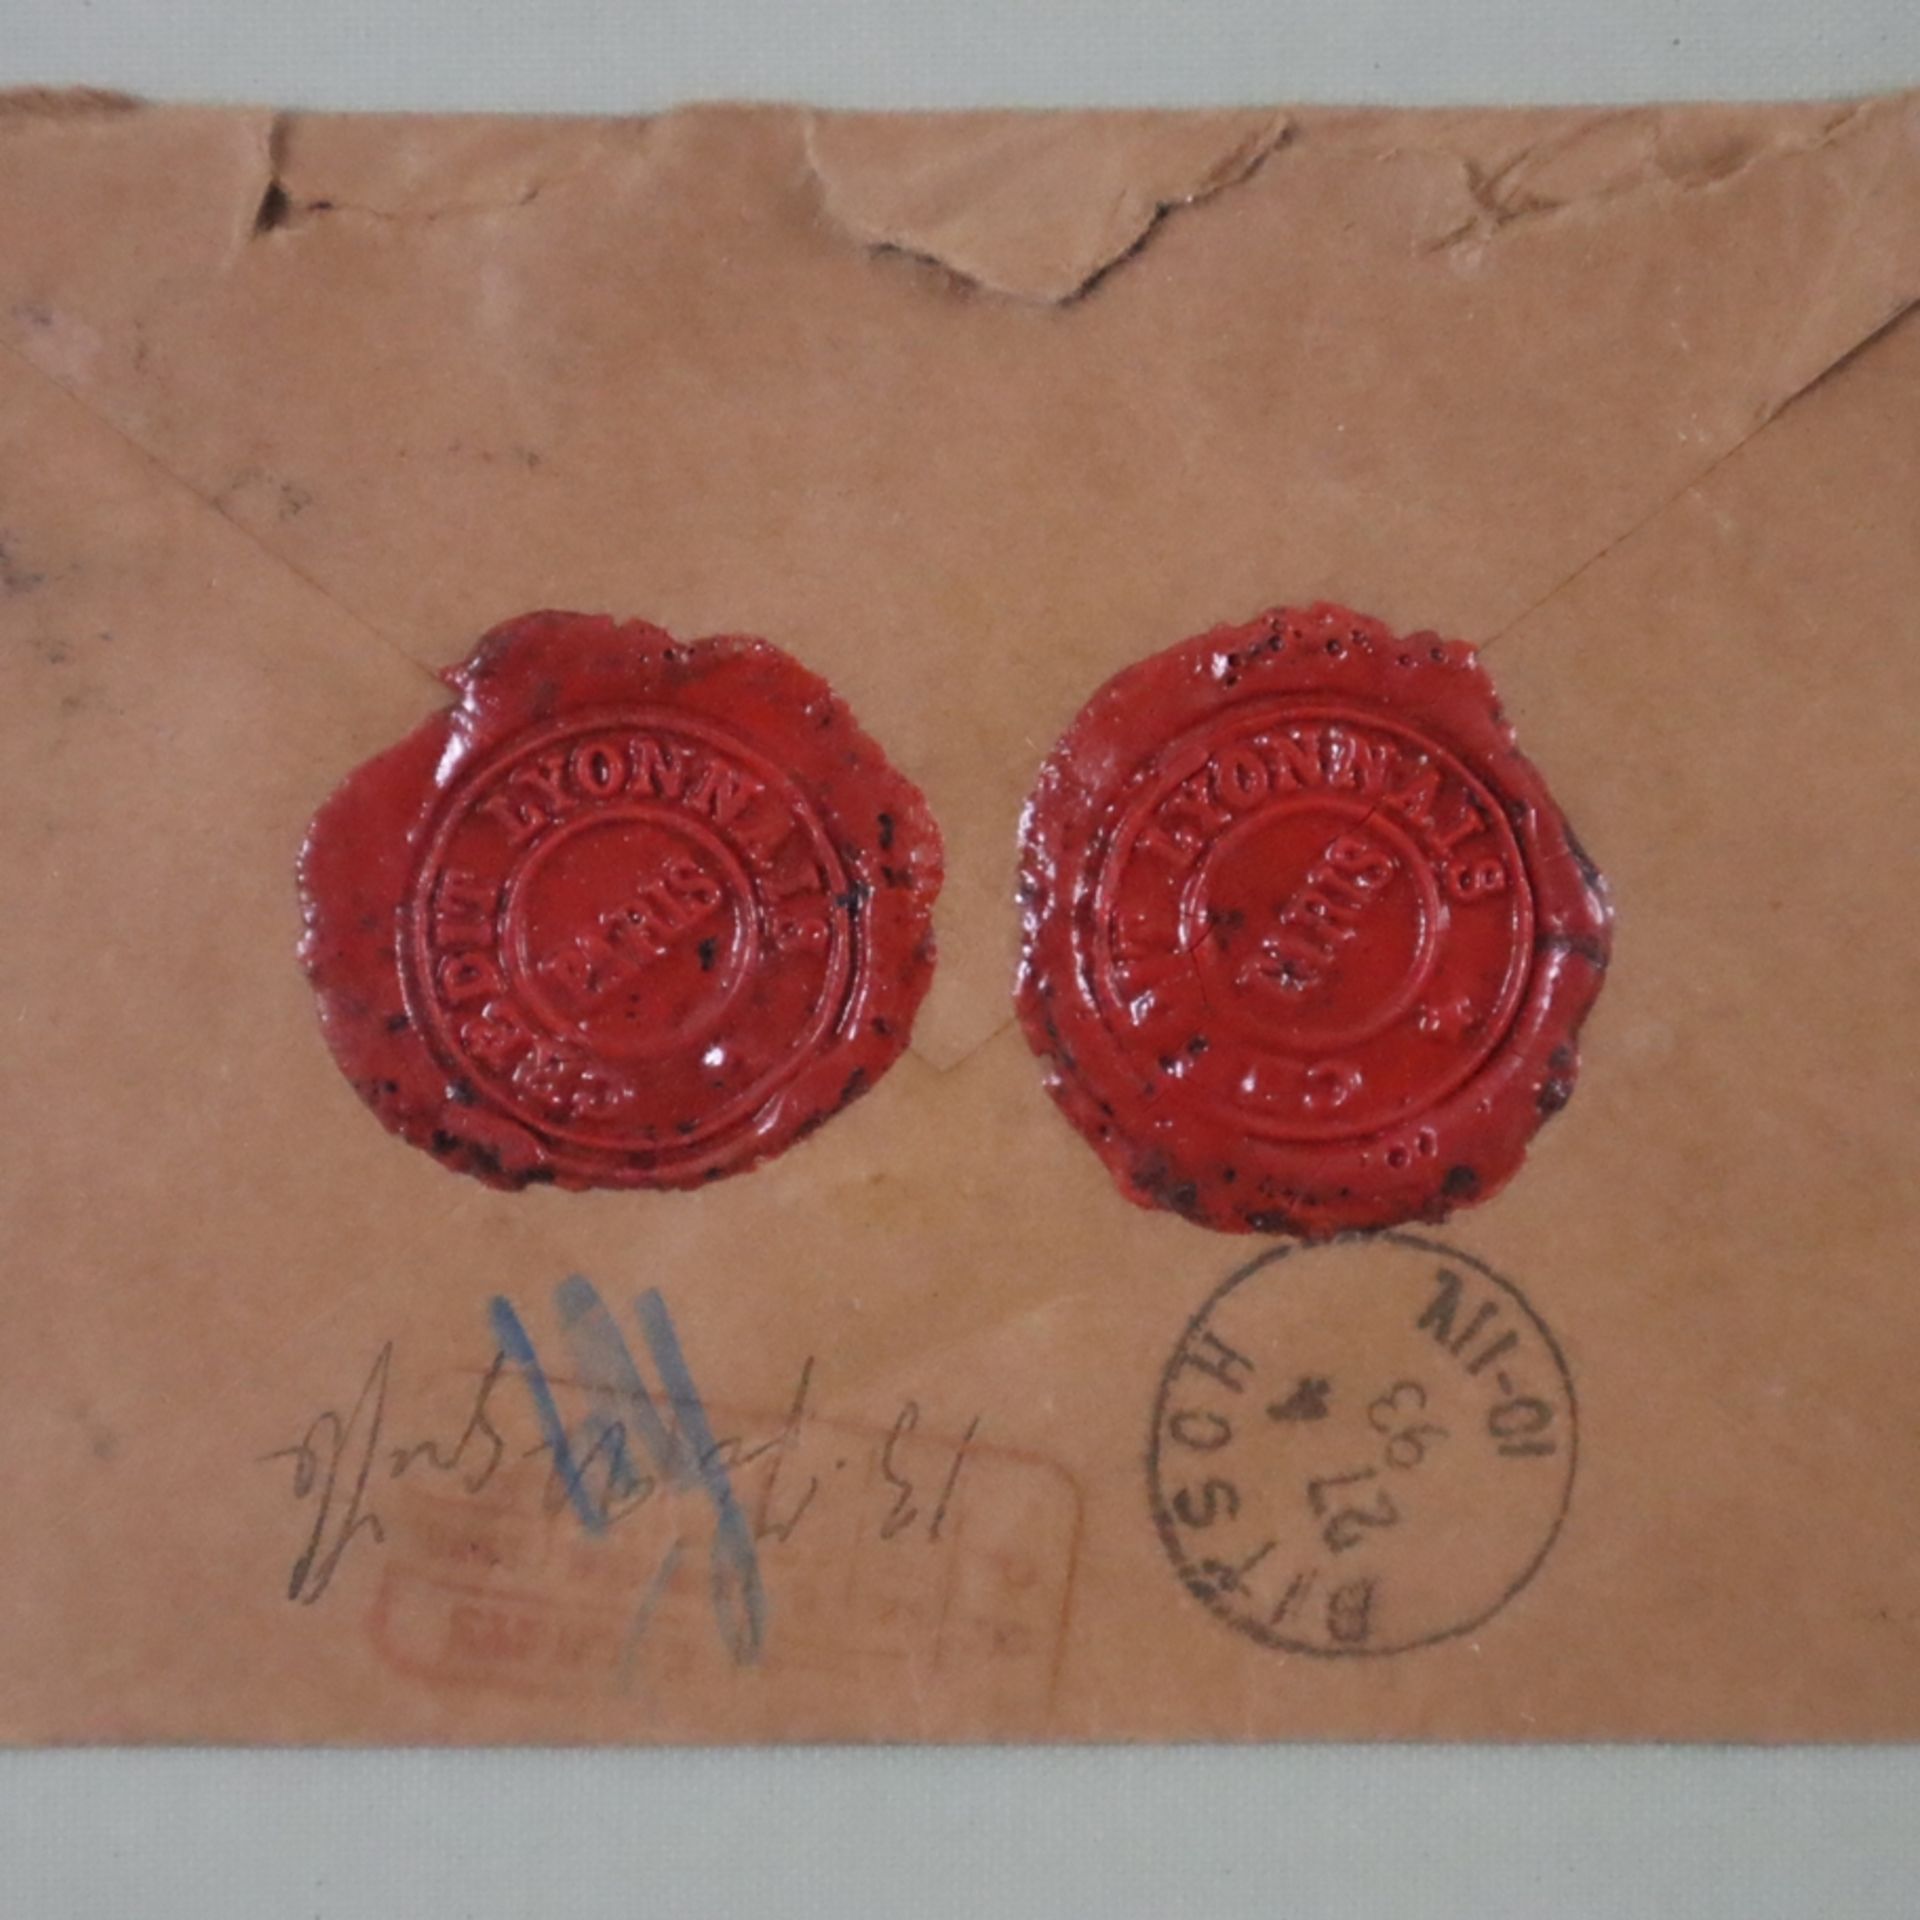 Alte Briefumschläge mit Siegeln - Ende 19.Jh., 2x mit roten Siegeln "Credit Lyonnais Paris" (2+5), - Image 4 of 5